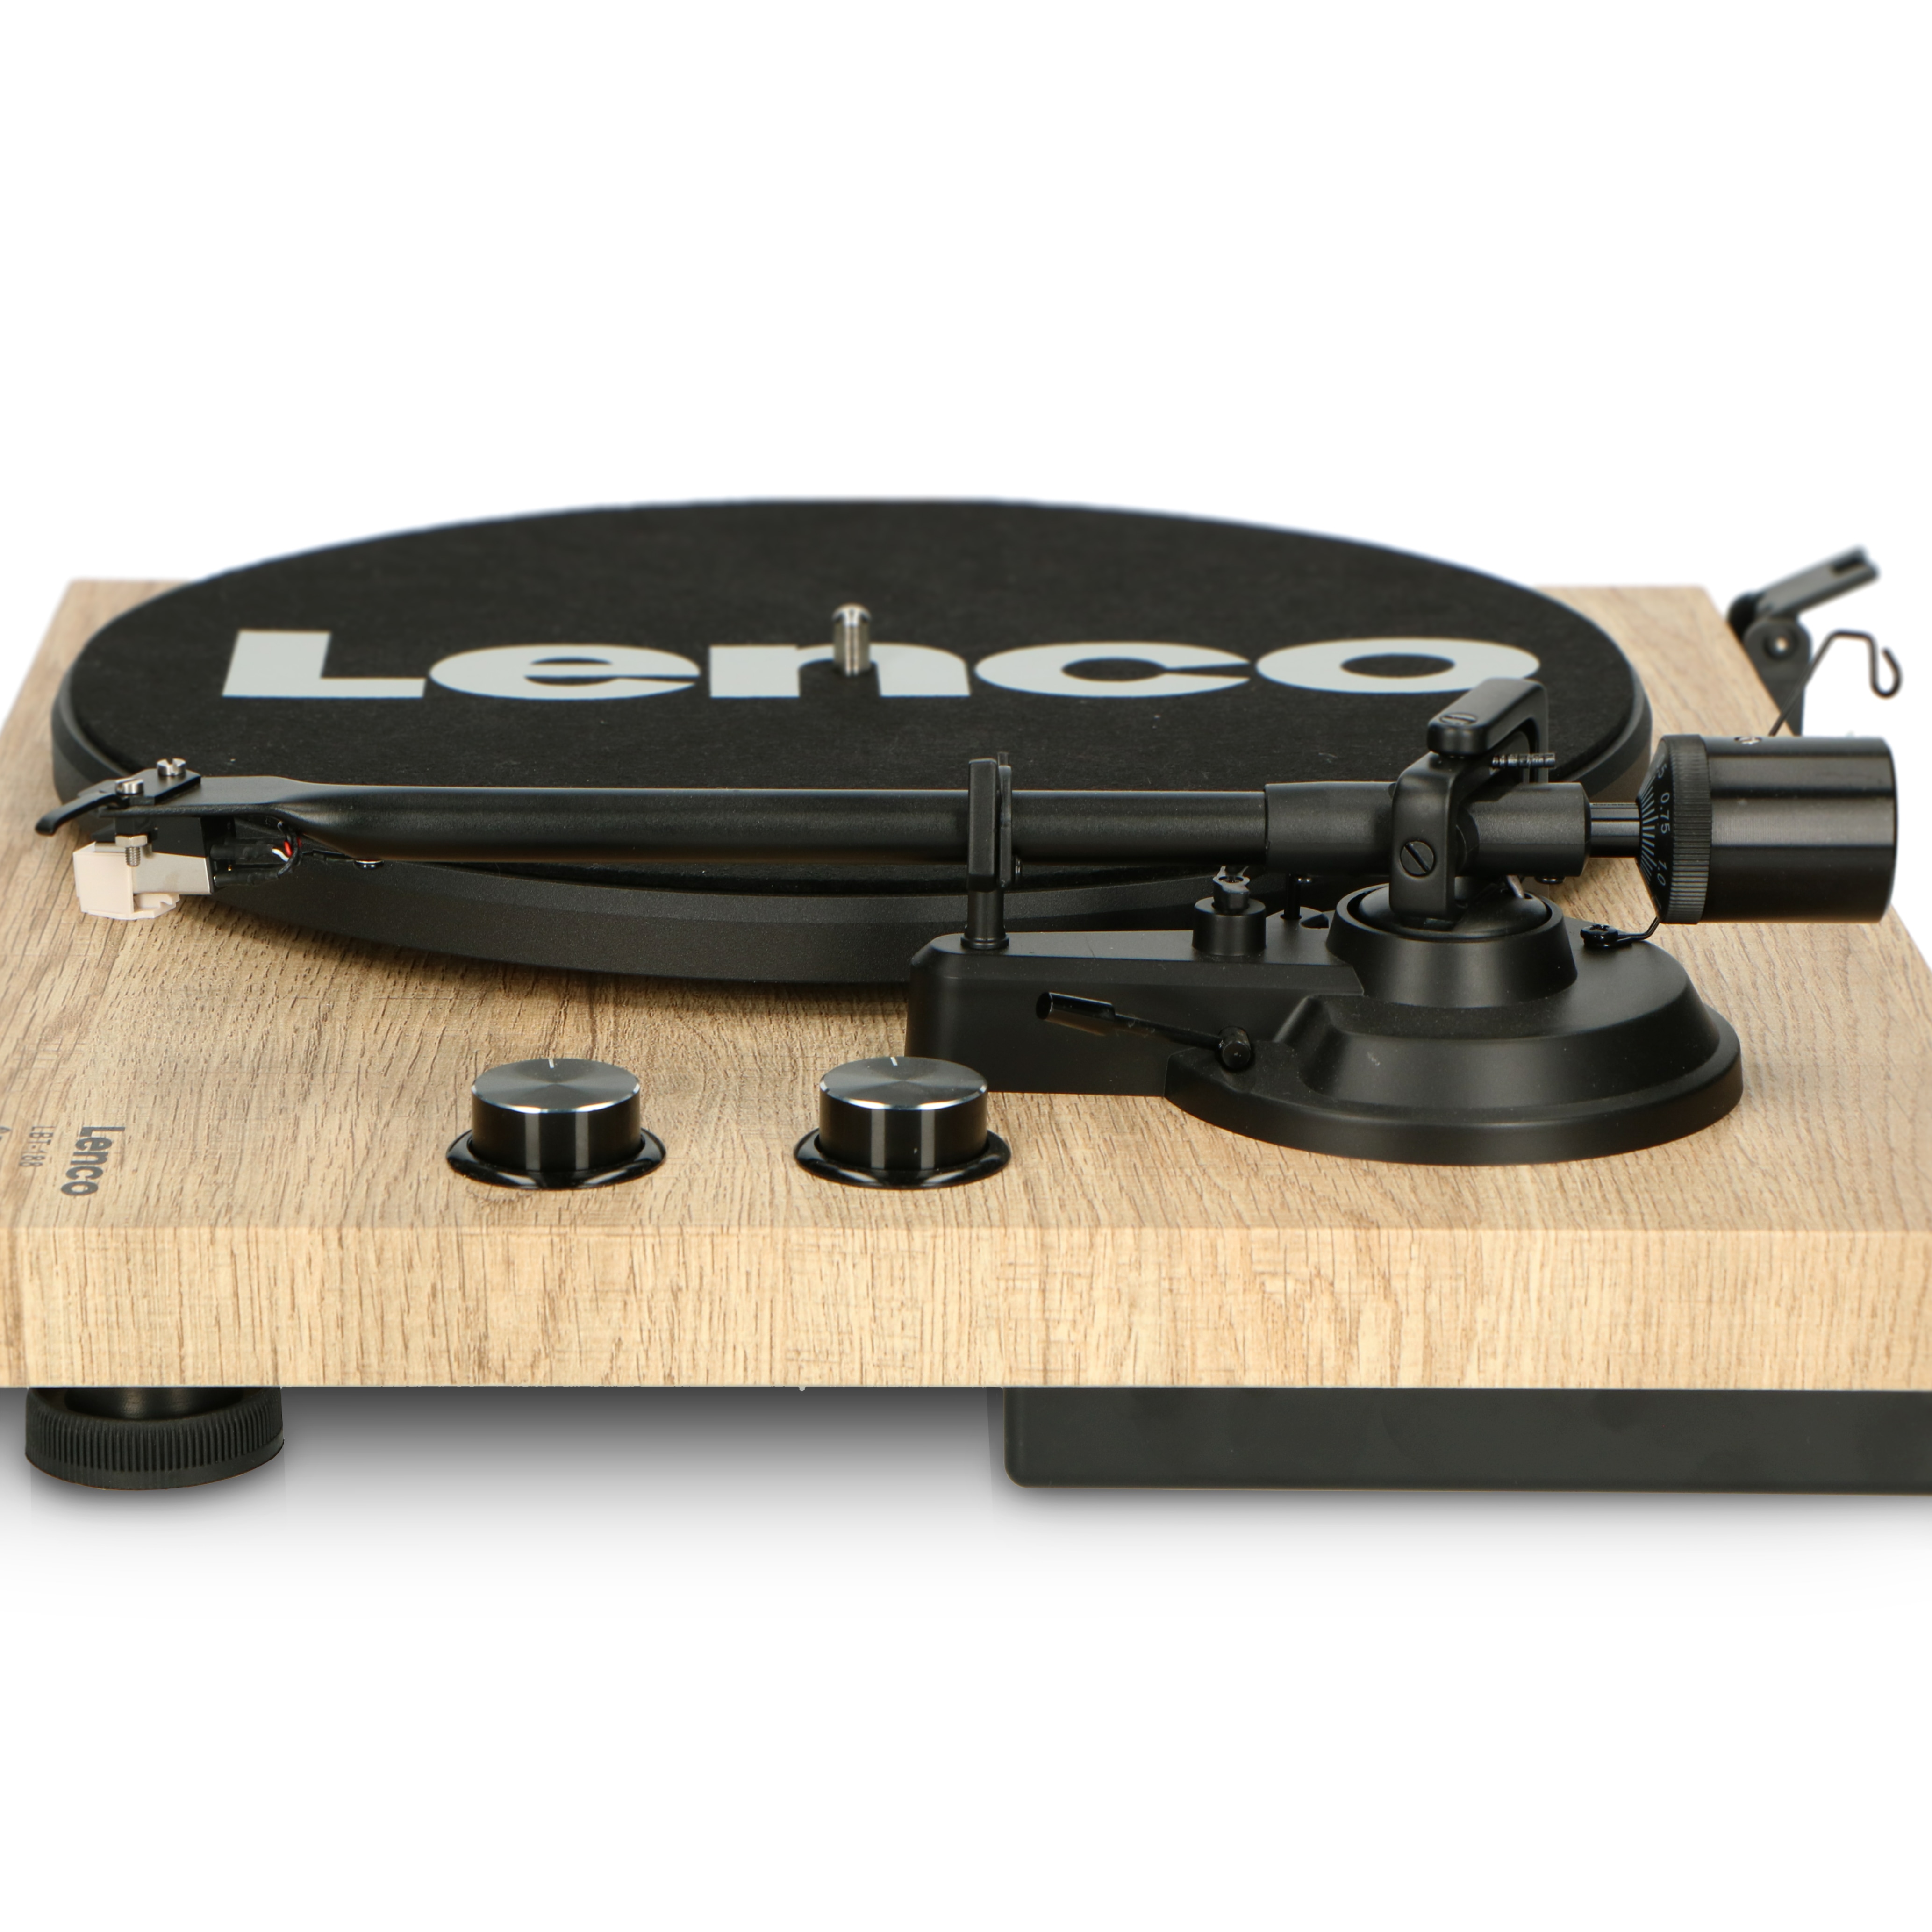 Netto online - Riemenantrieb - und Holz LBT-188PI kaufen - Plattenspieler Lenco Bluetooth Anti-Skating bei mit